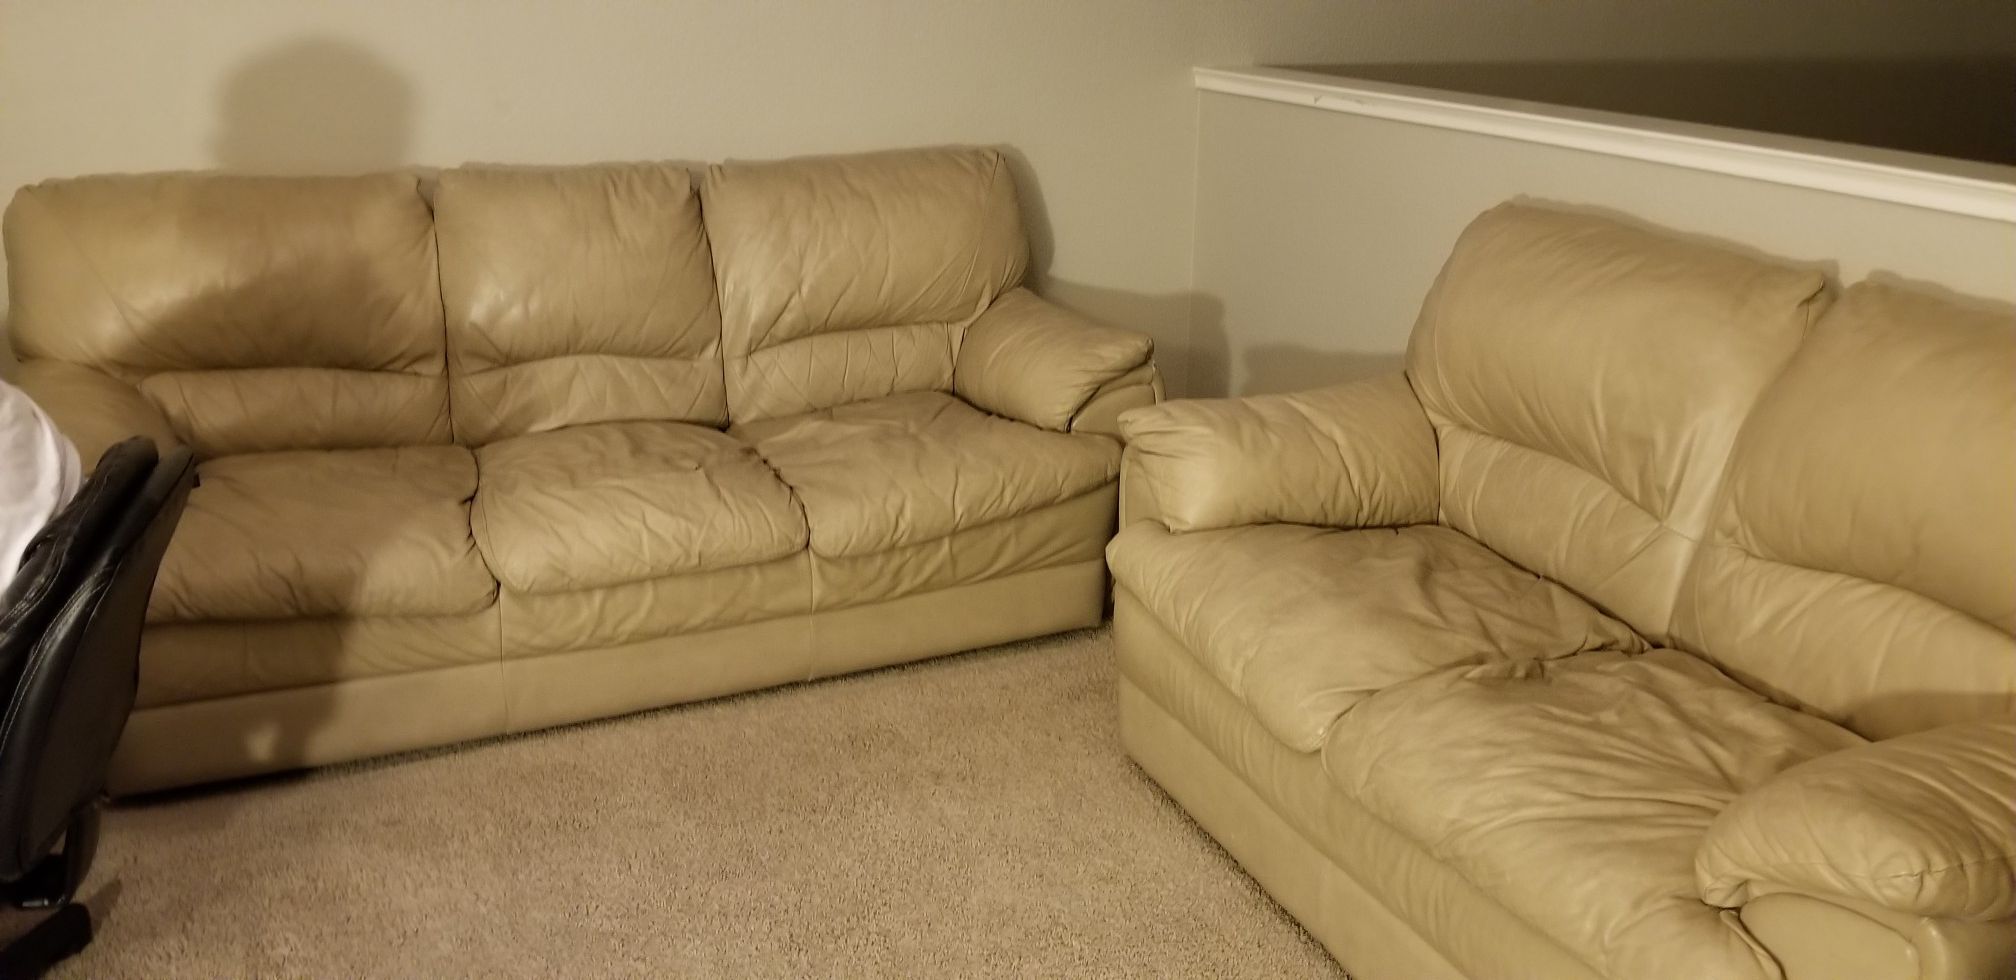 Beige sofas used